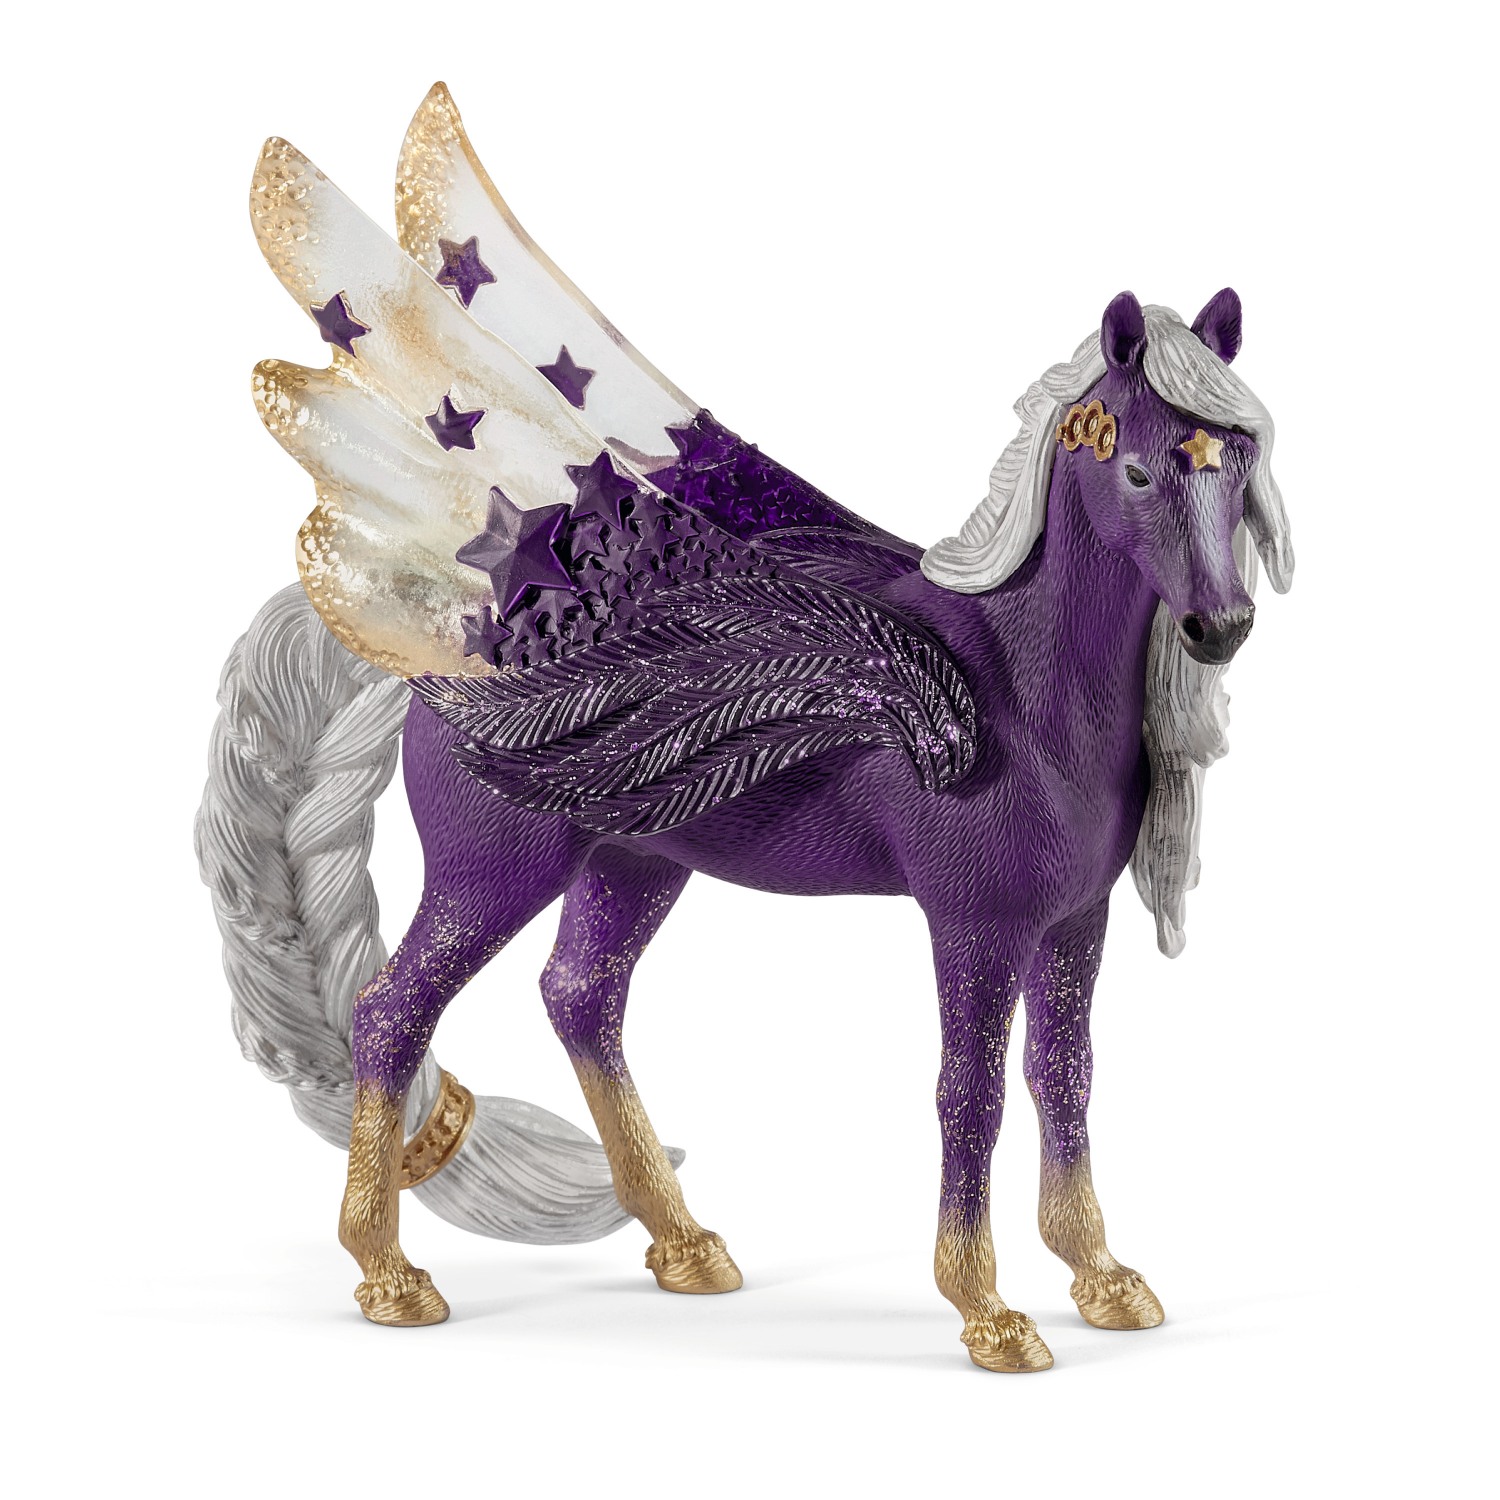 Schleich 70579 - Bayala, Sternen Pegasus, Stute, Spielfigur, Tierfigur